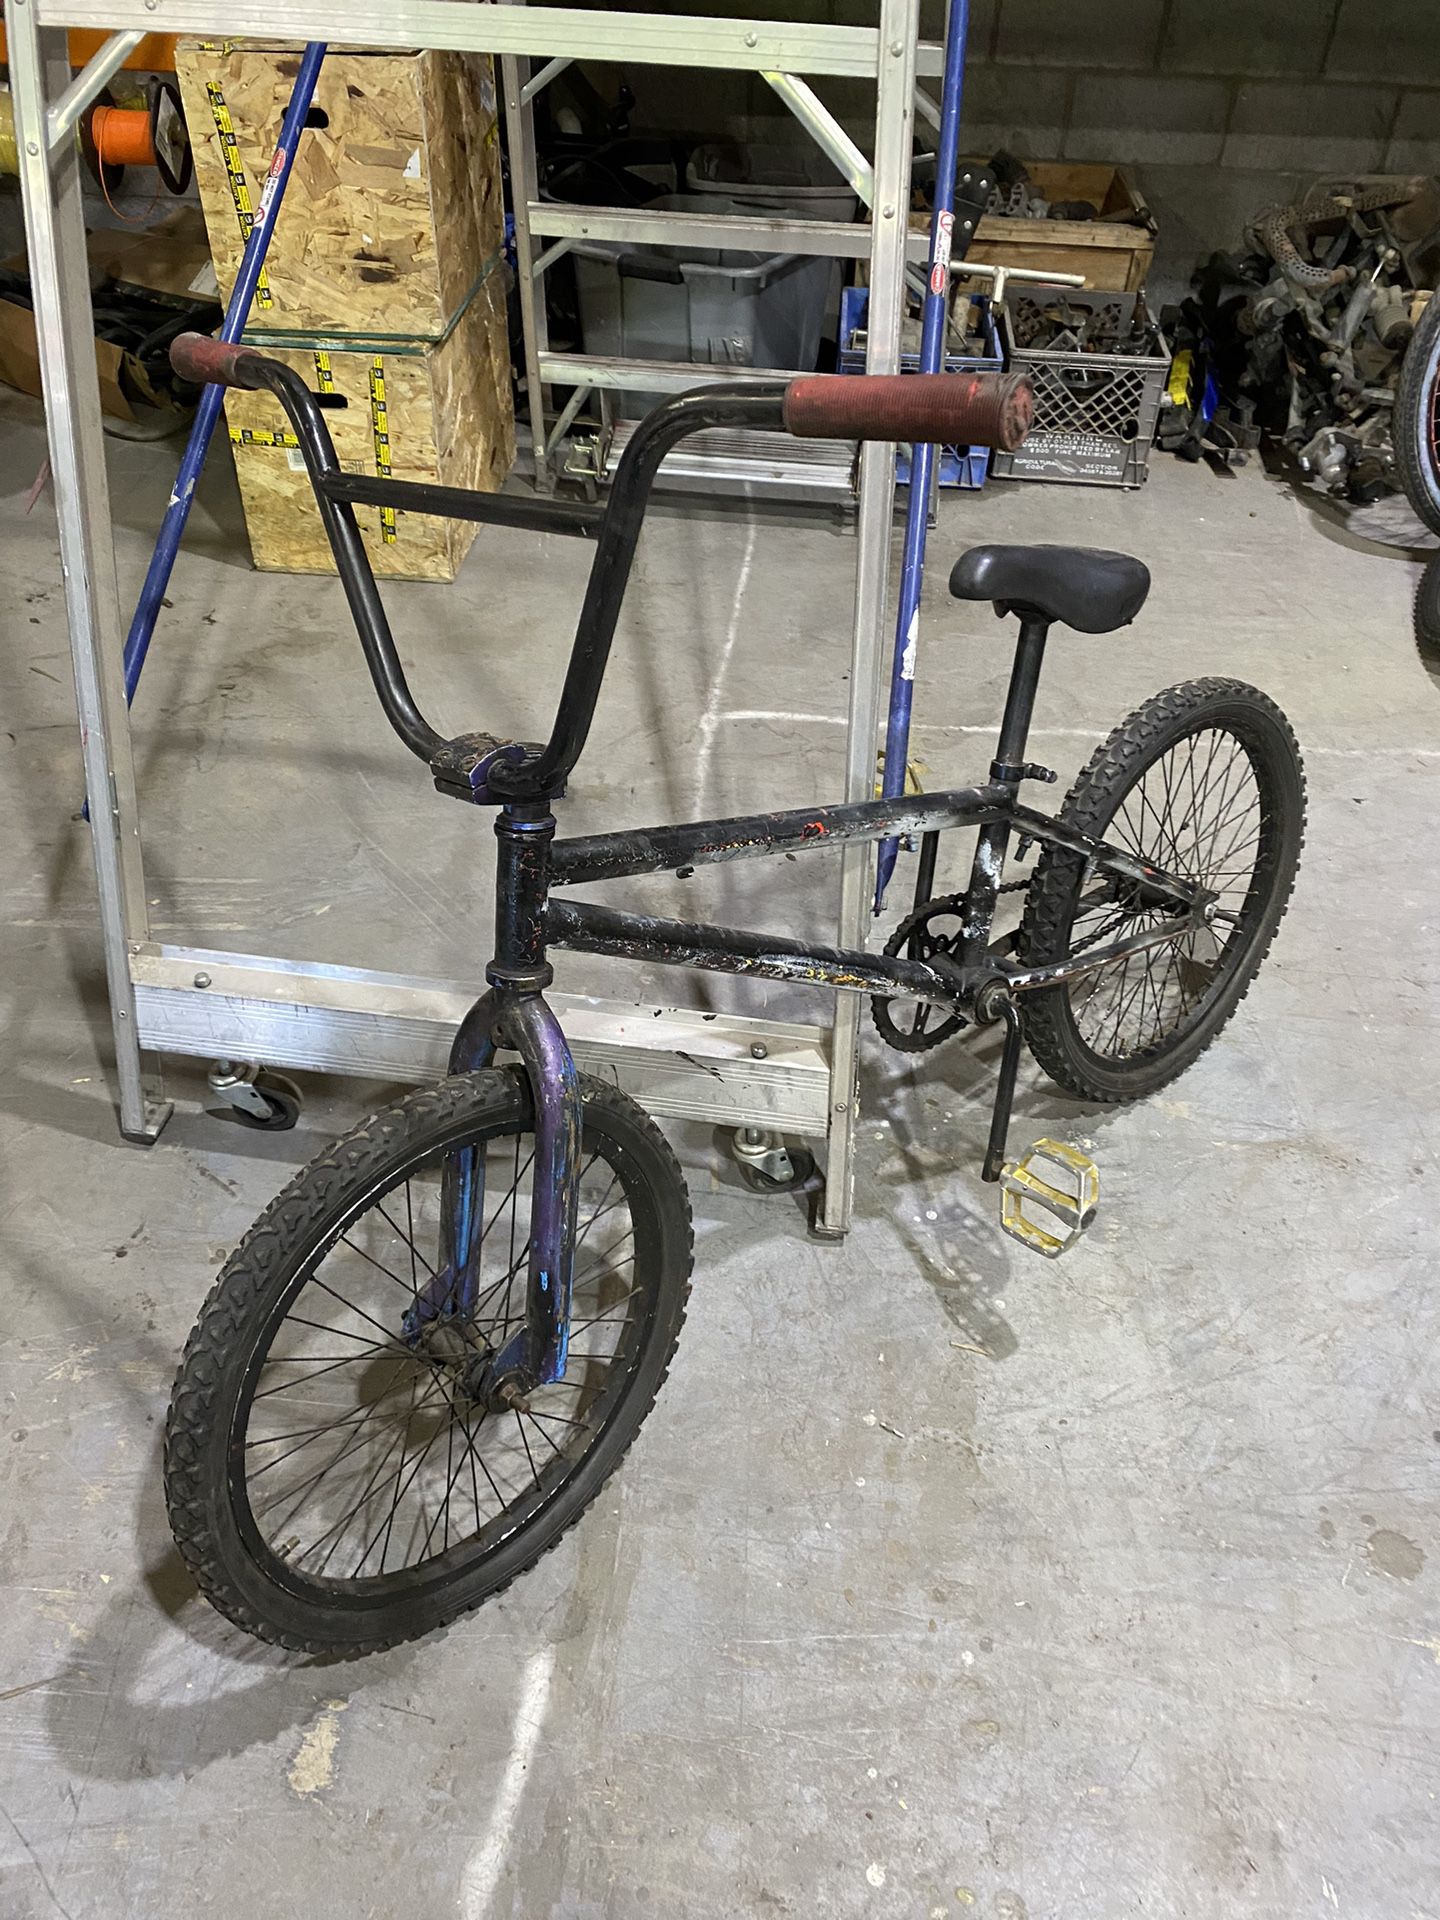 BMX Bicycle